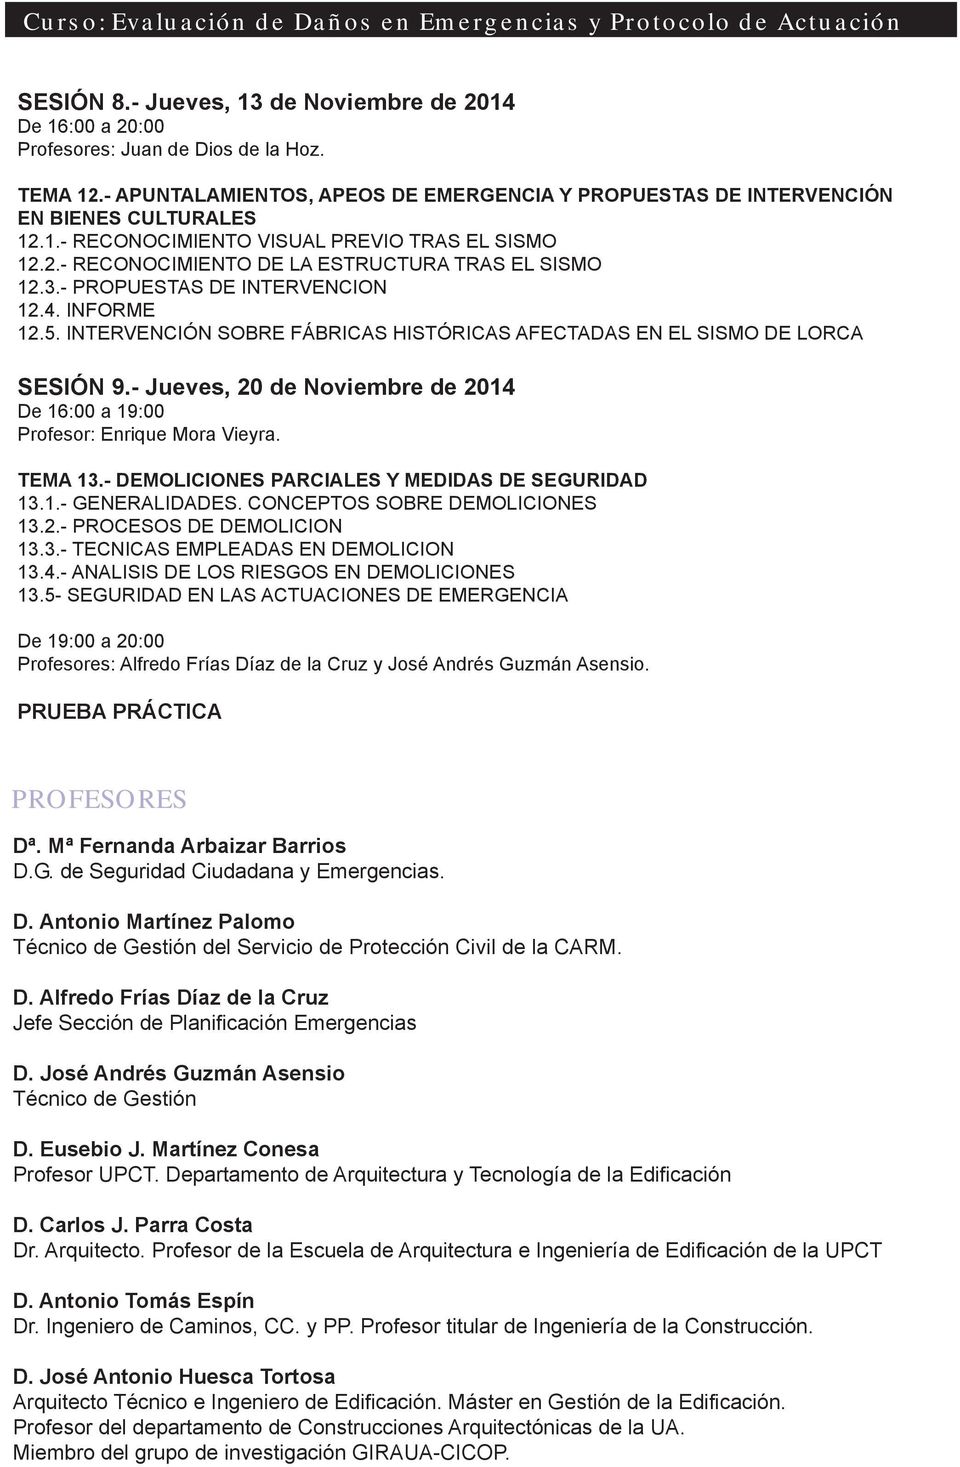 - Jueves, 20 de Noviembre de 2014 De 16:00 a 19:00 Profesor: Enrique Mora Vieyra. TEMA 13.- DEMOLICIONES PARCIALES Y MEDIDAS DE SEGURIDAD 13.1.- GENERALIDADES. CONCEPTOS SOBRE DEMOLICIONES 13.2.- PROCESOS DE DEMOLICION 13.